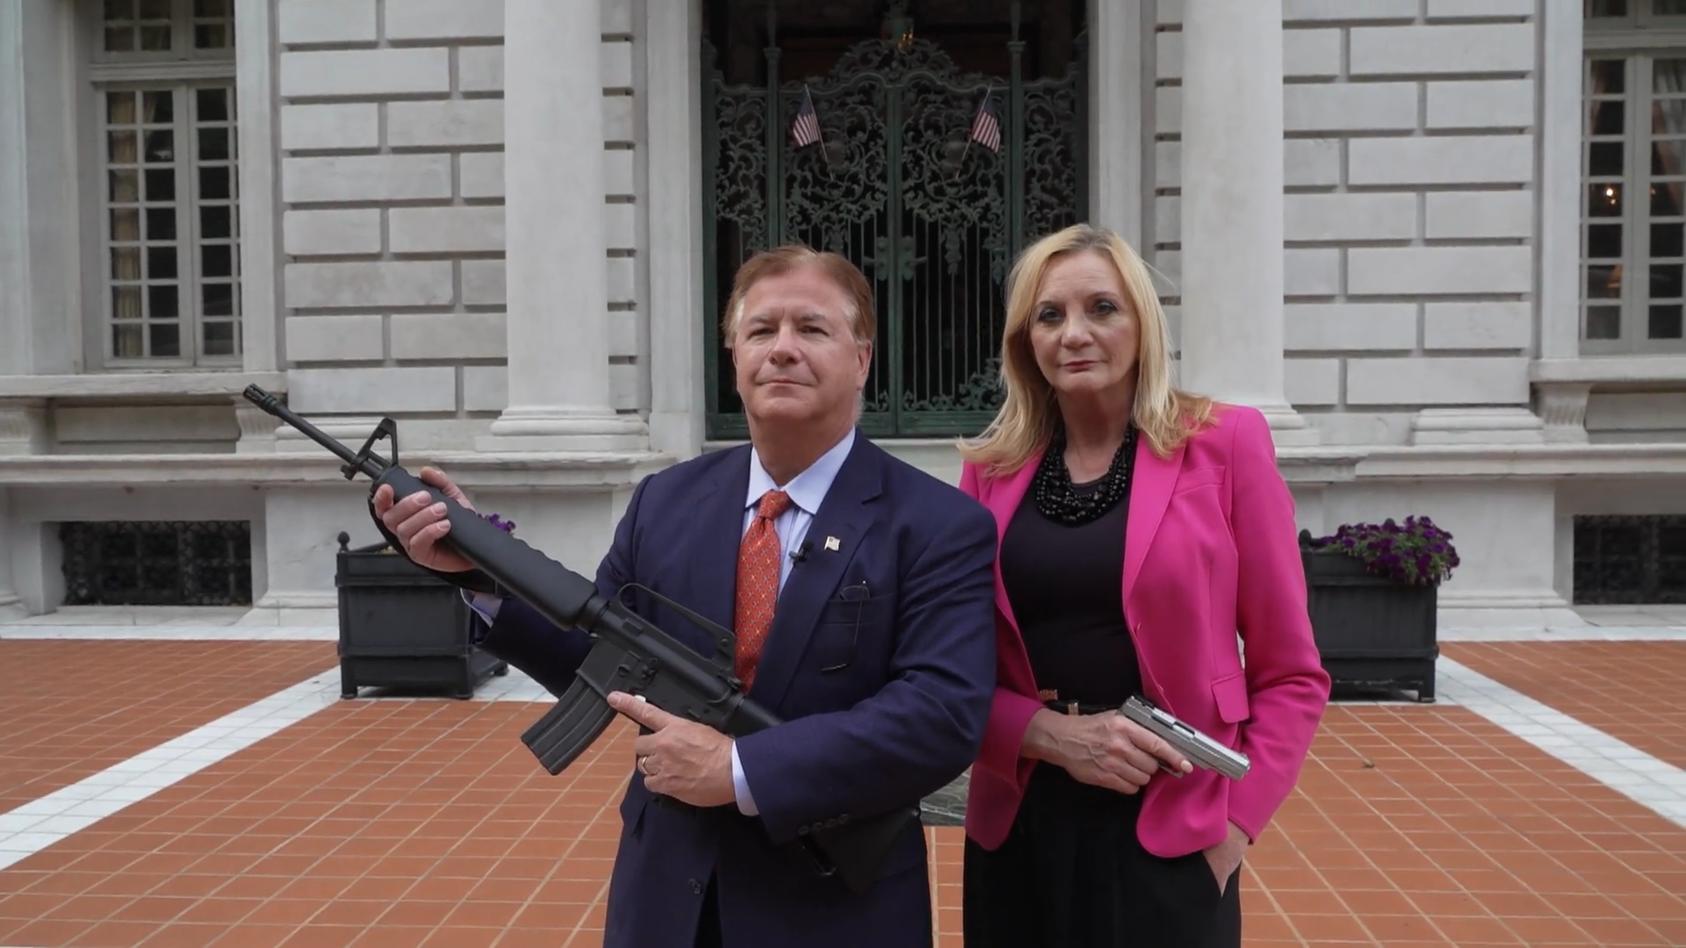 Berühmtes Waffenpaar will in die Politik Mit Maschinengewehr auf der Veranda